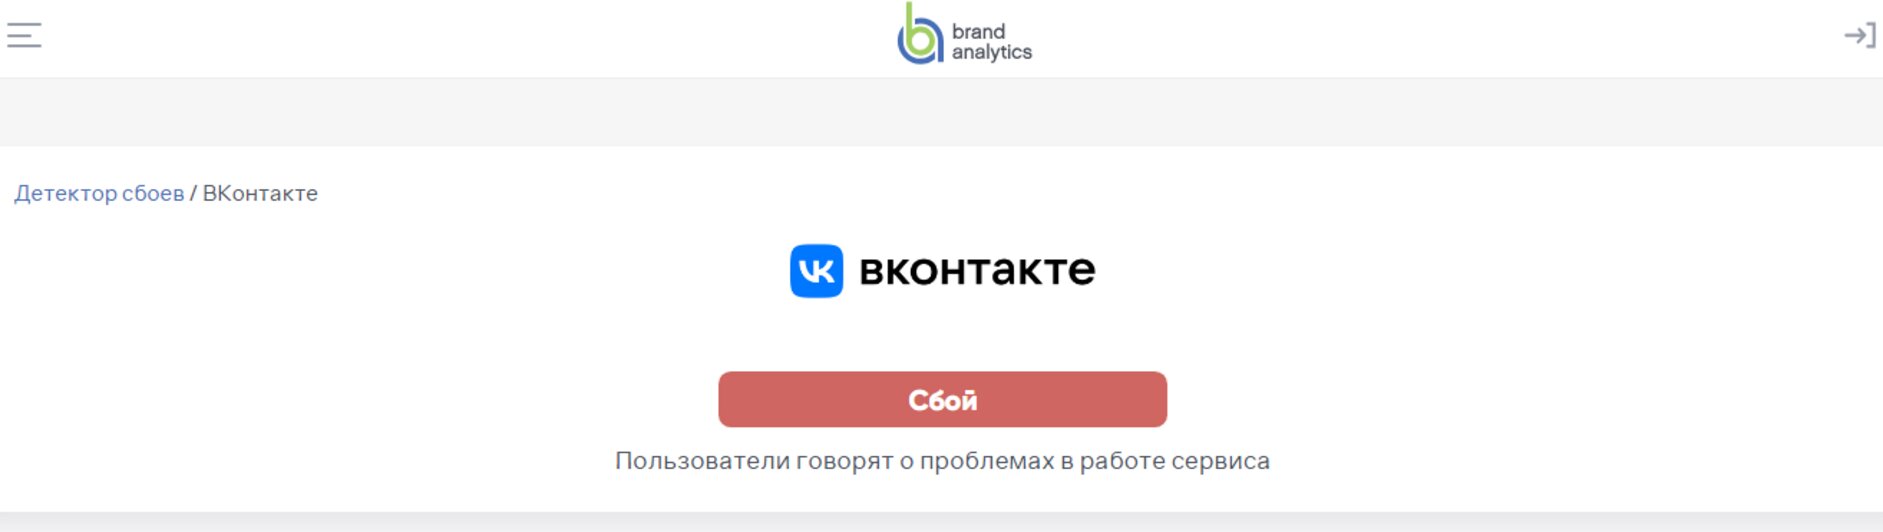 ВКонтакте не работает? Состояние и проблемы. Детектор сбоев